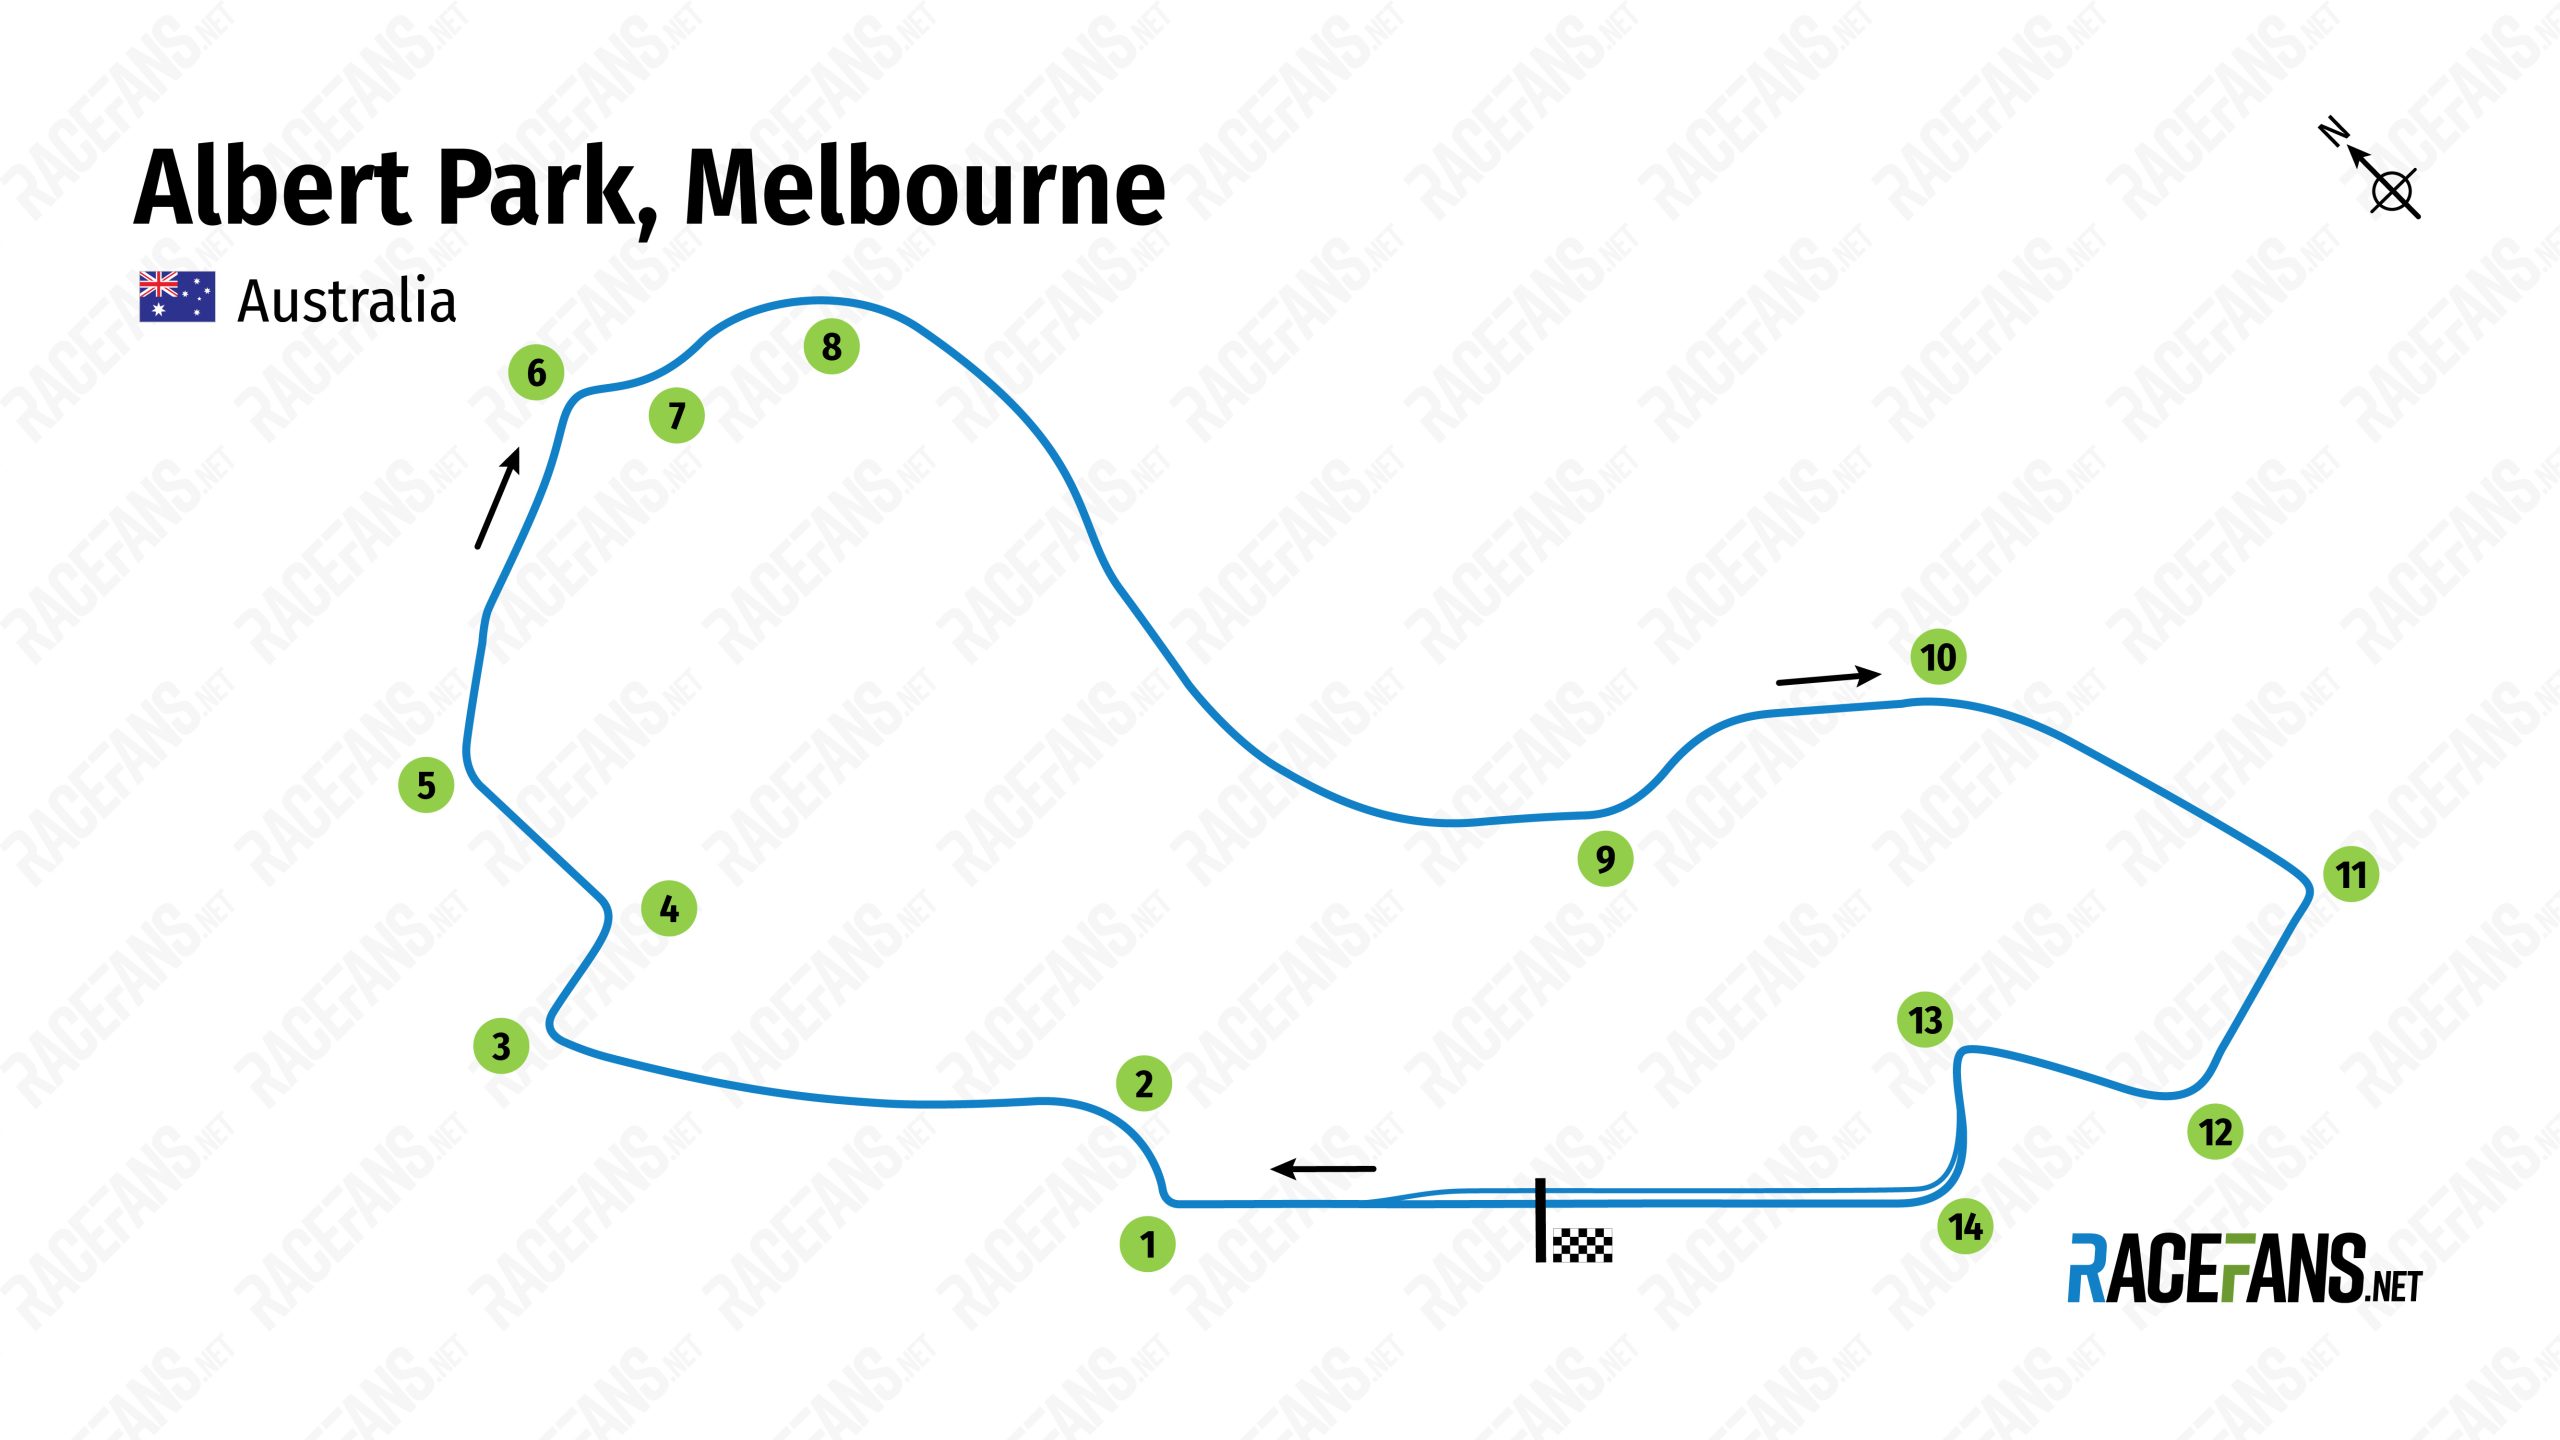 Albert Park, Melbourne Formula 1 track map